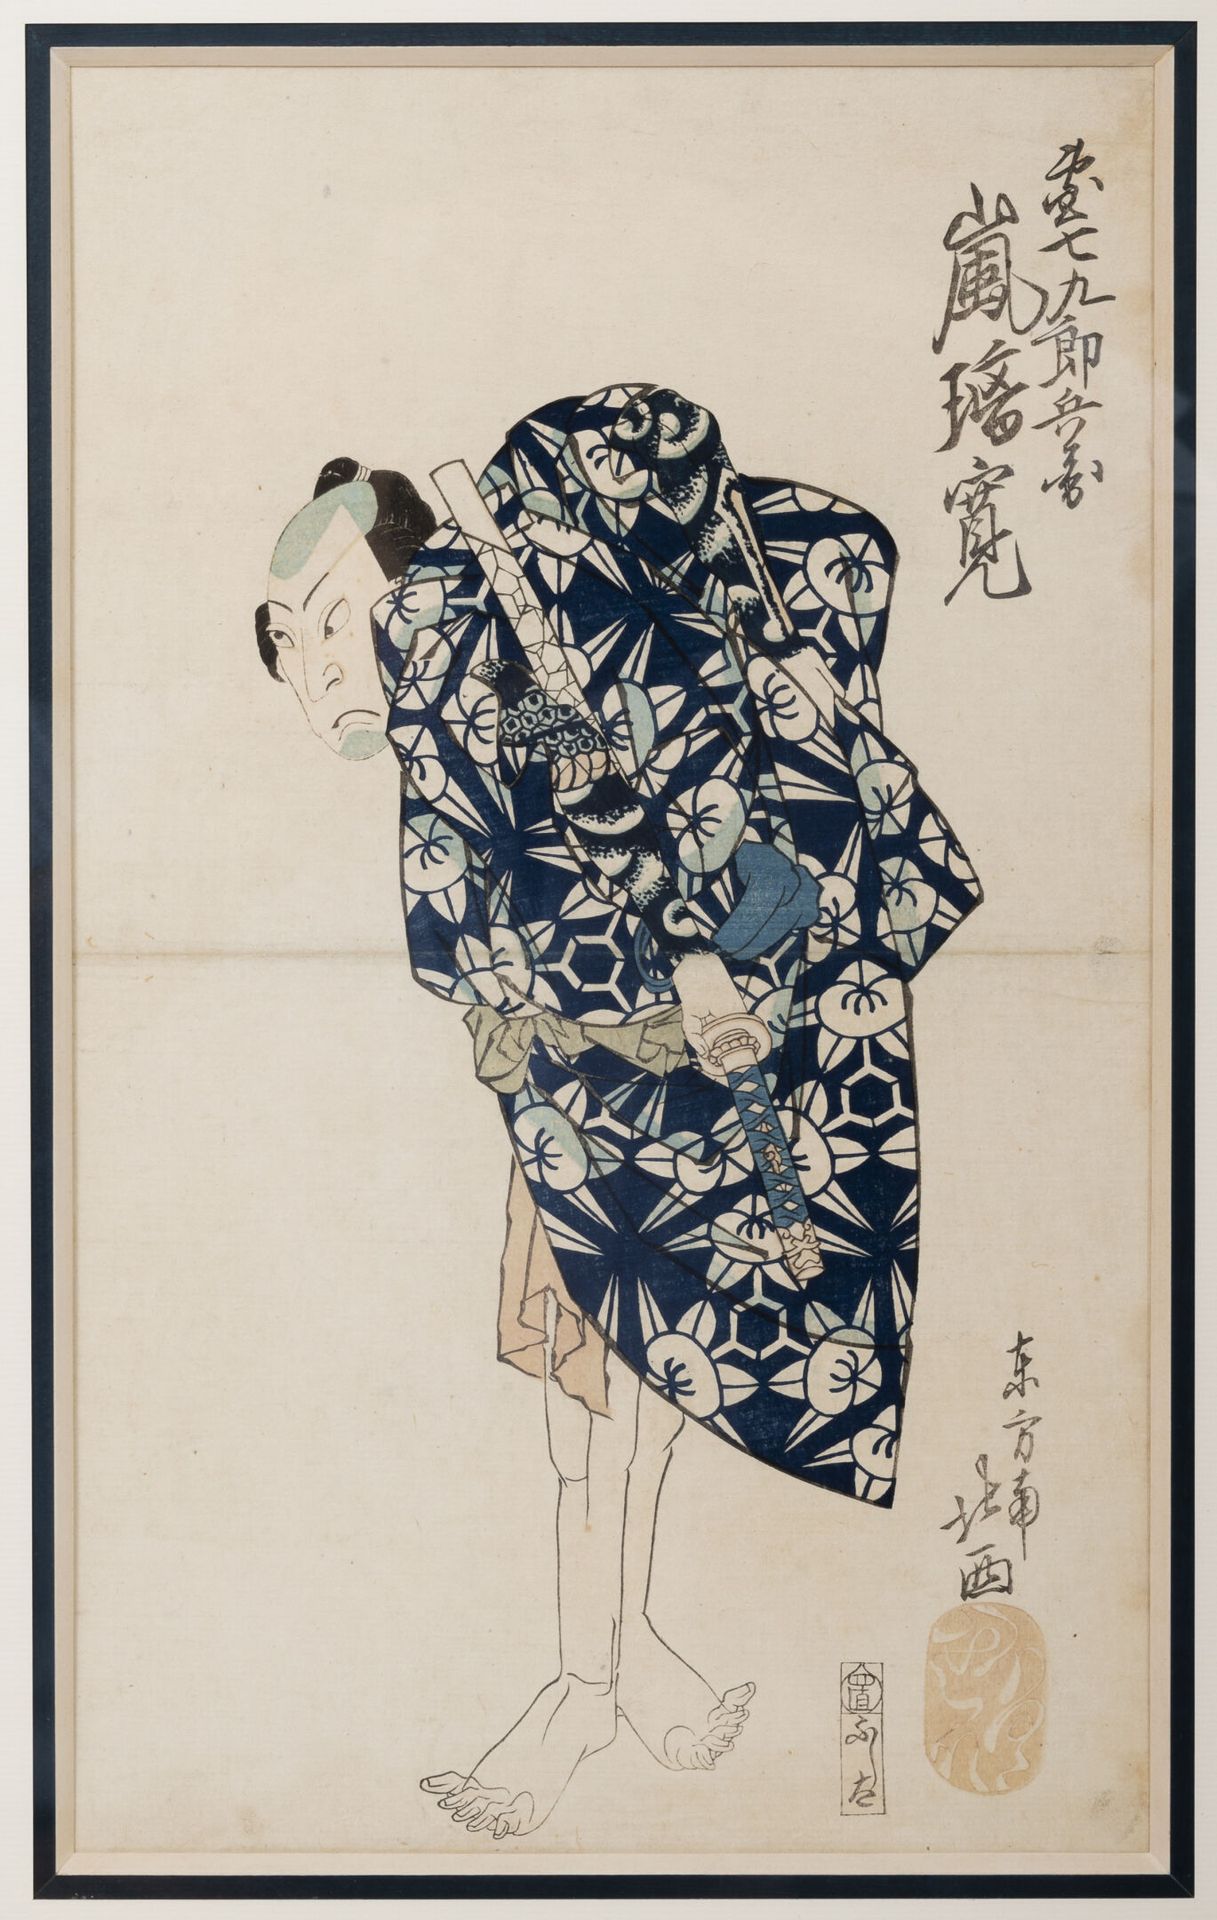 JAPON, XIXème siècle Acteur vêtu en samouraï, tenant un sabre, vu de dos.

Estam&hellip;